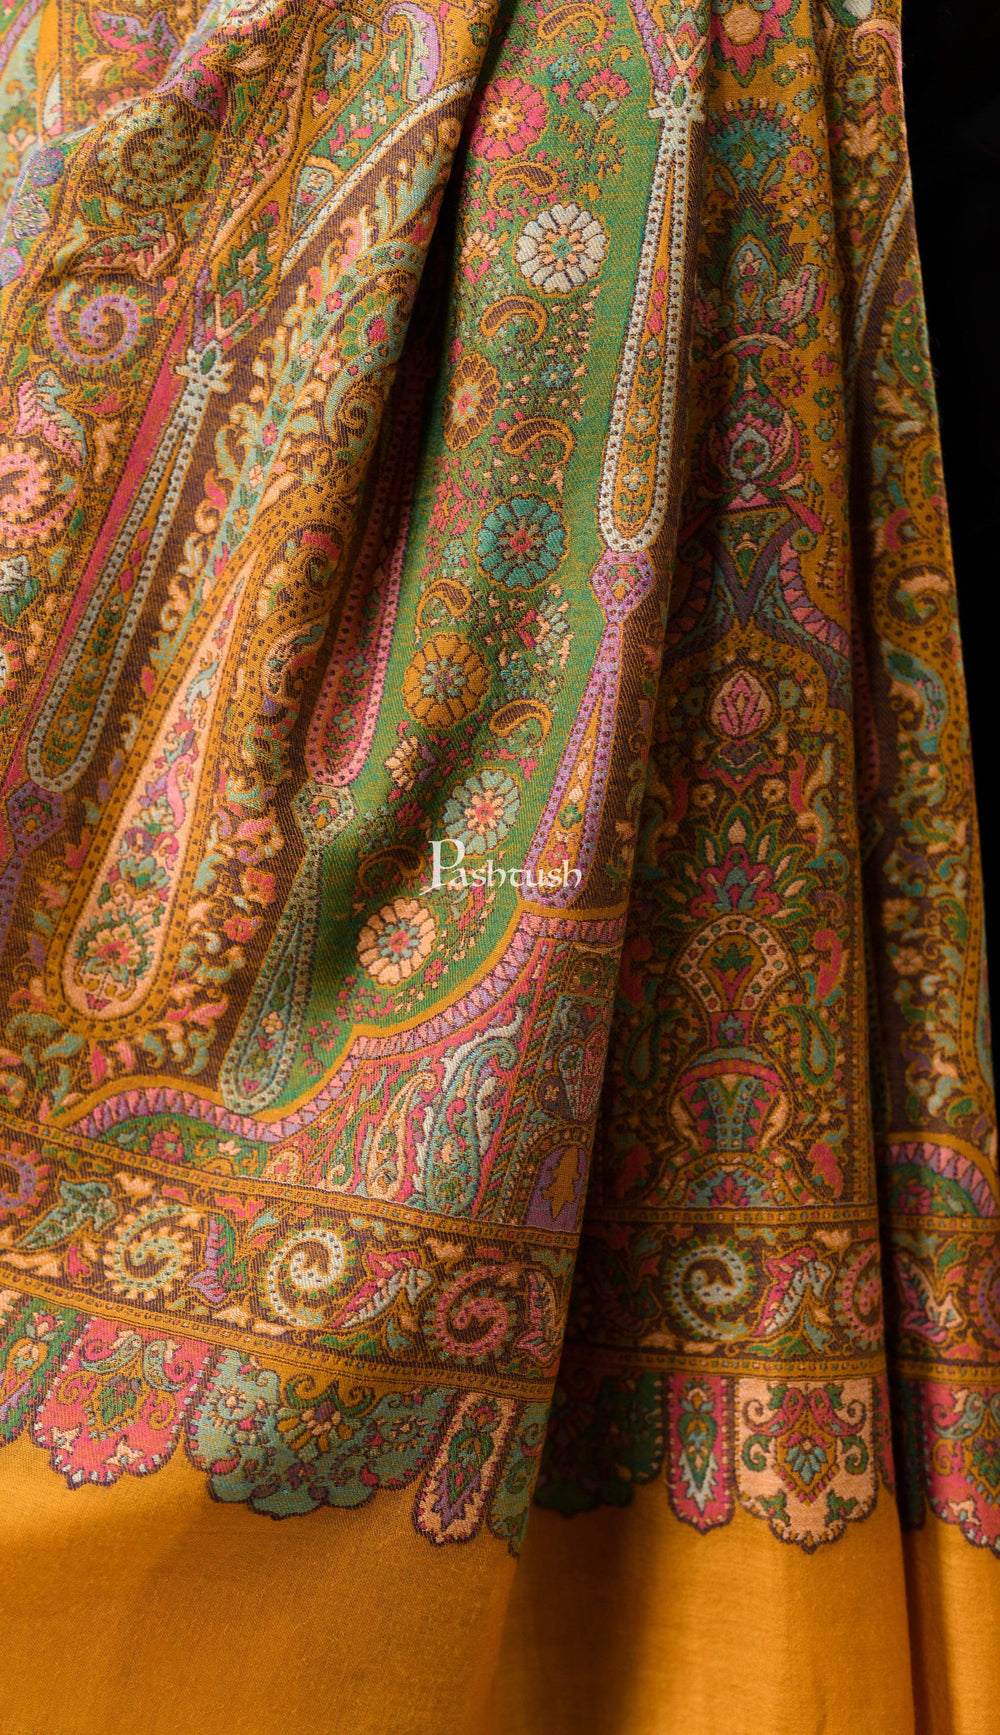 Pashtush India 100x200 Pashtush Mens 100% Pure Wool, Woven Kalamkari Design Shawl, Kashmiri Mustard